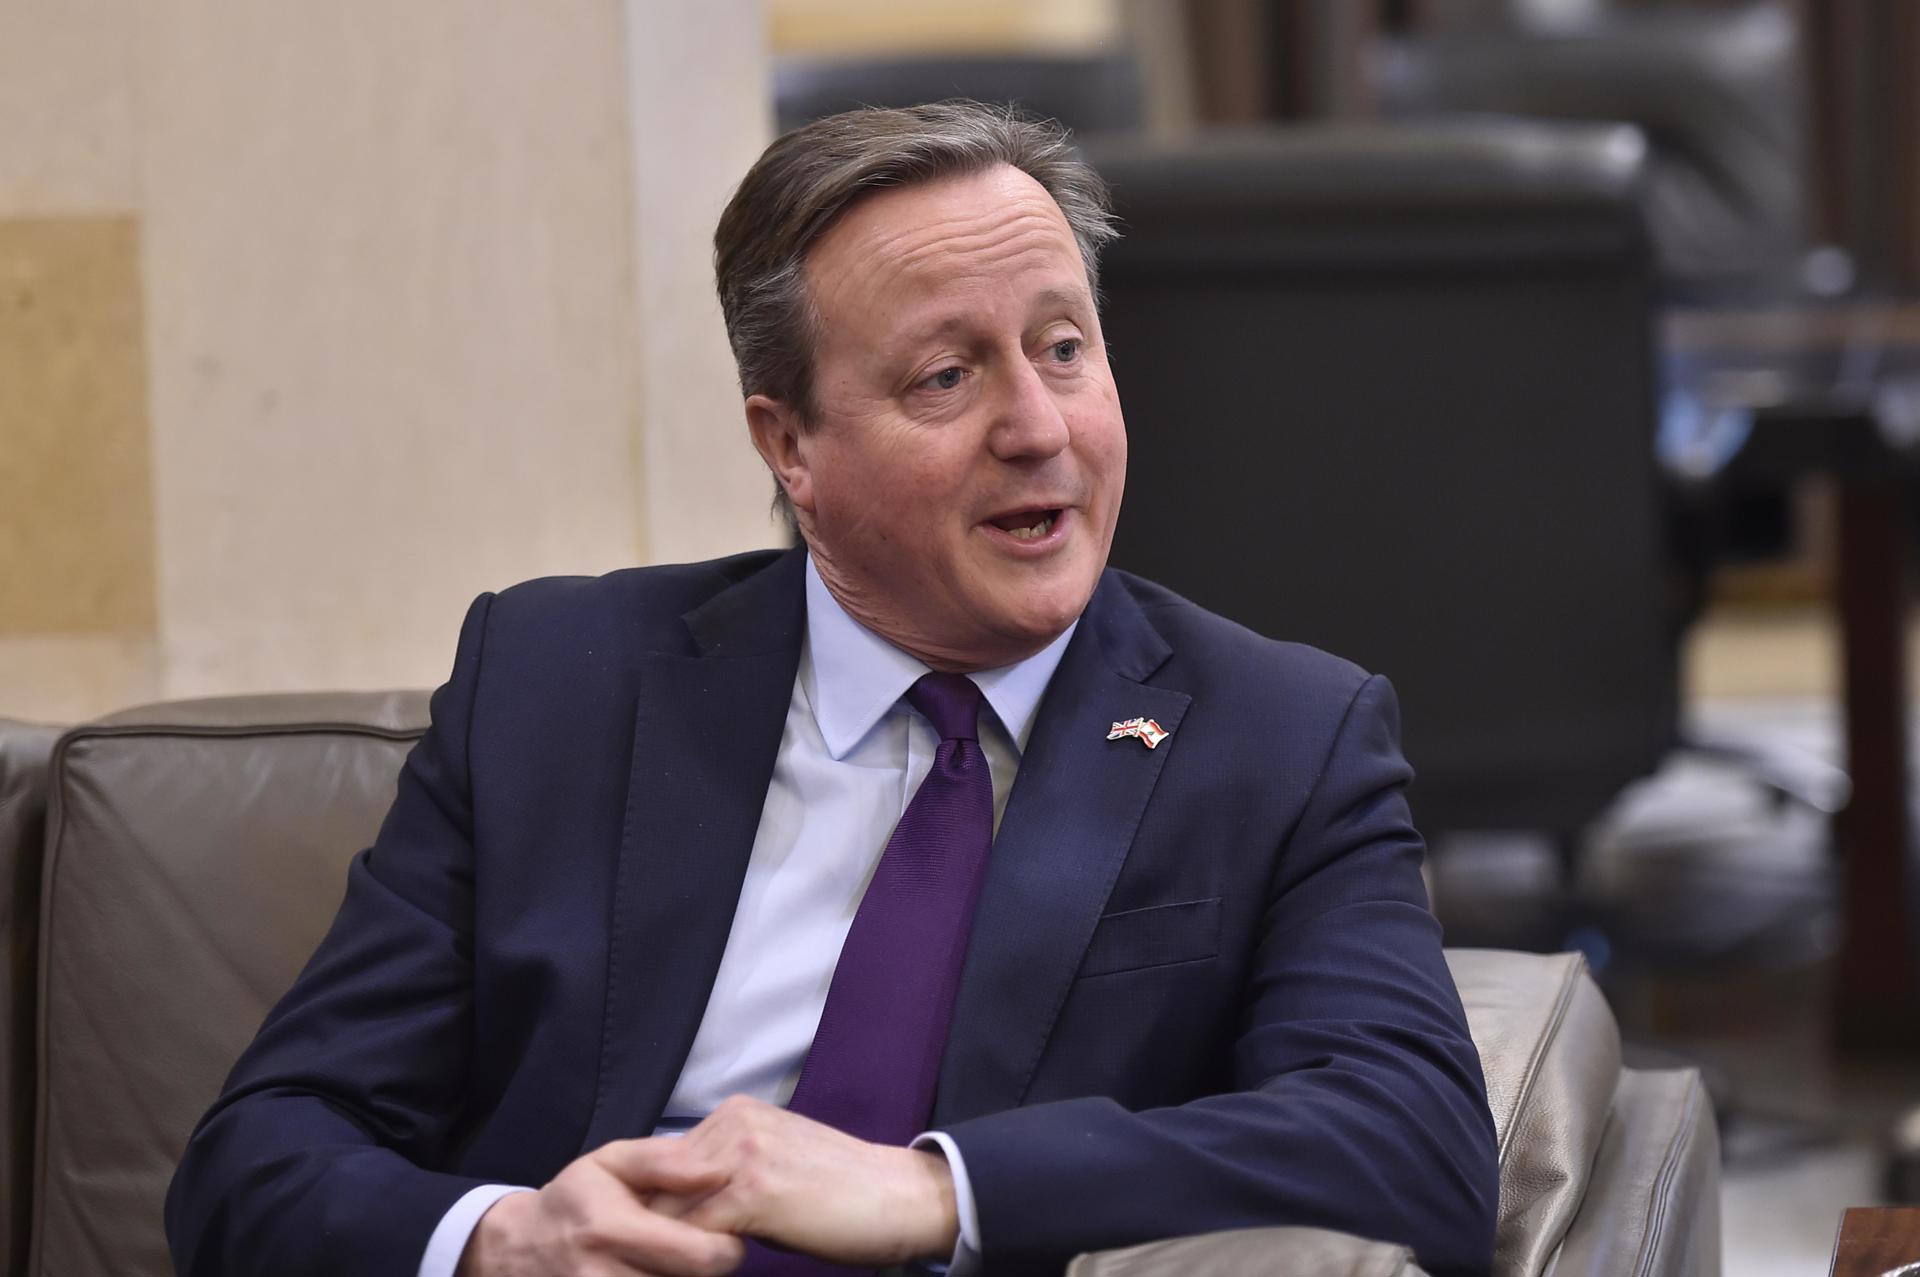 Foto de archivo del ministro británico de Asuntos Exteriores, David Cameron. EFE/EPA/WAEL HAMZEH